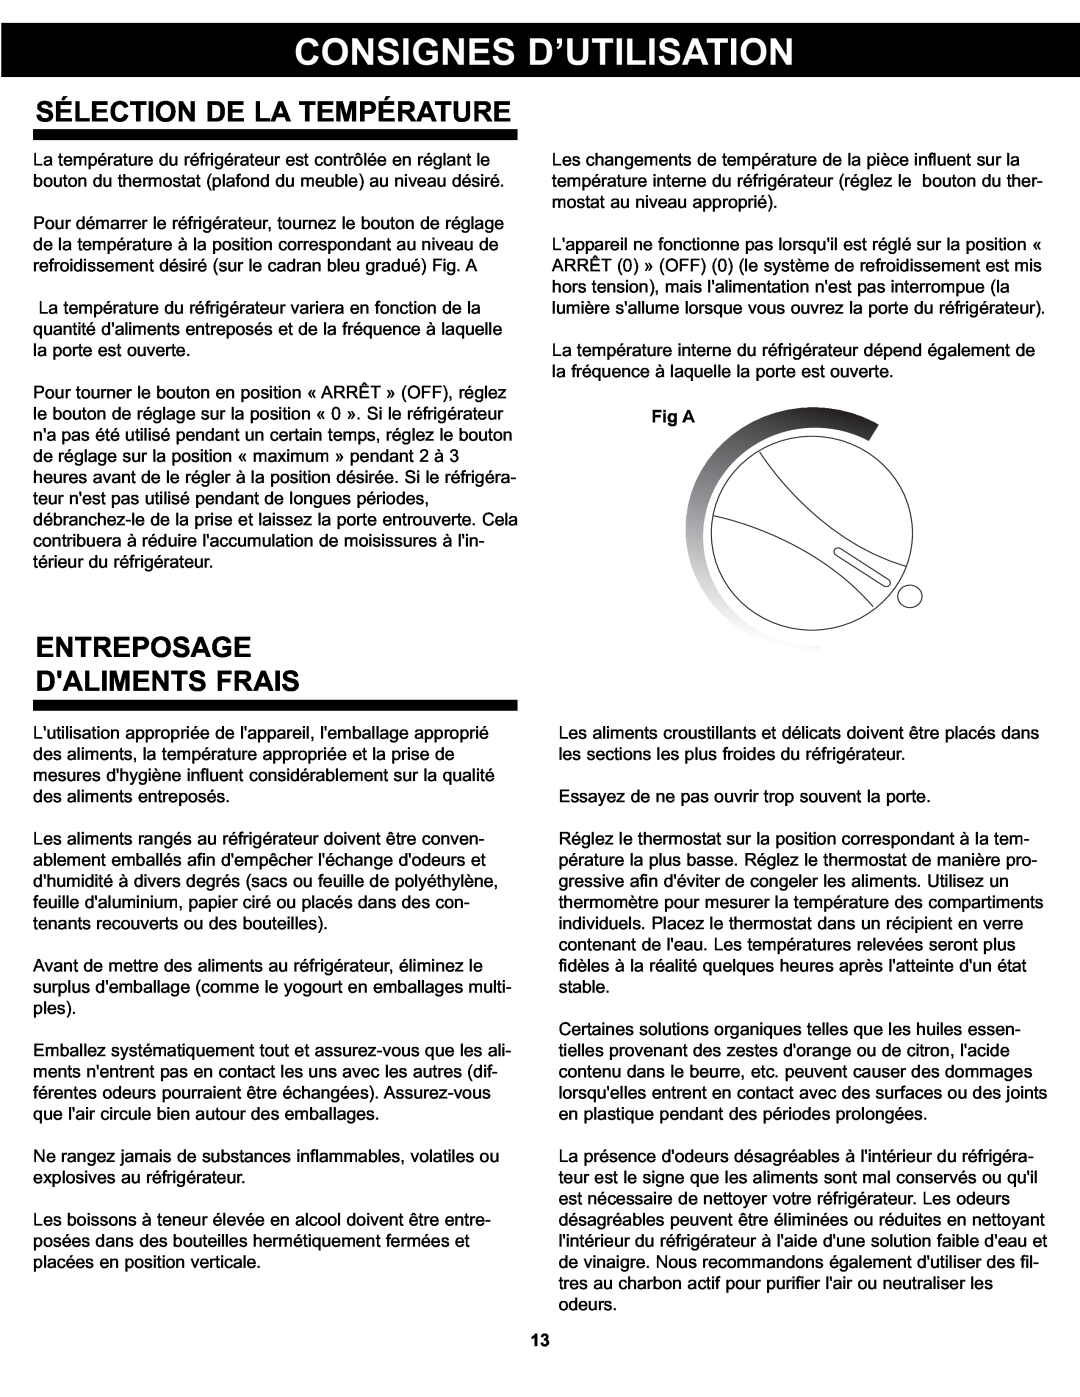 Danby DAR125SLDD manual Consignes D’Utilisation, Sélection De La Température, Entreposage Daliments Frais, Fig A 